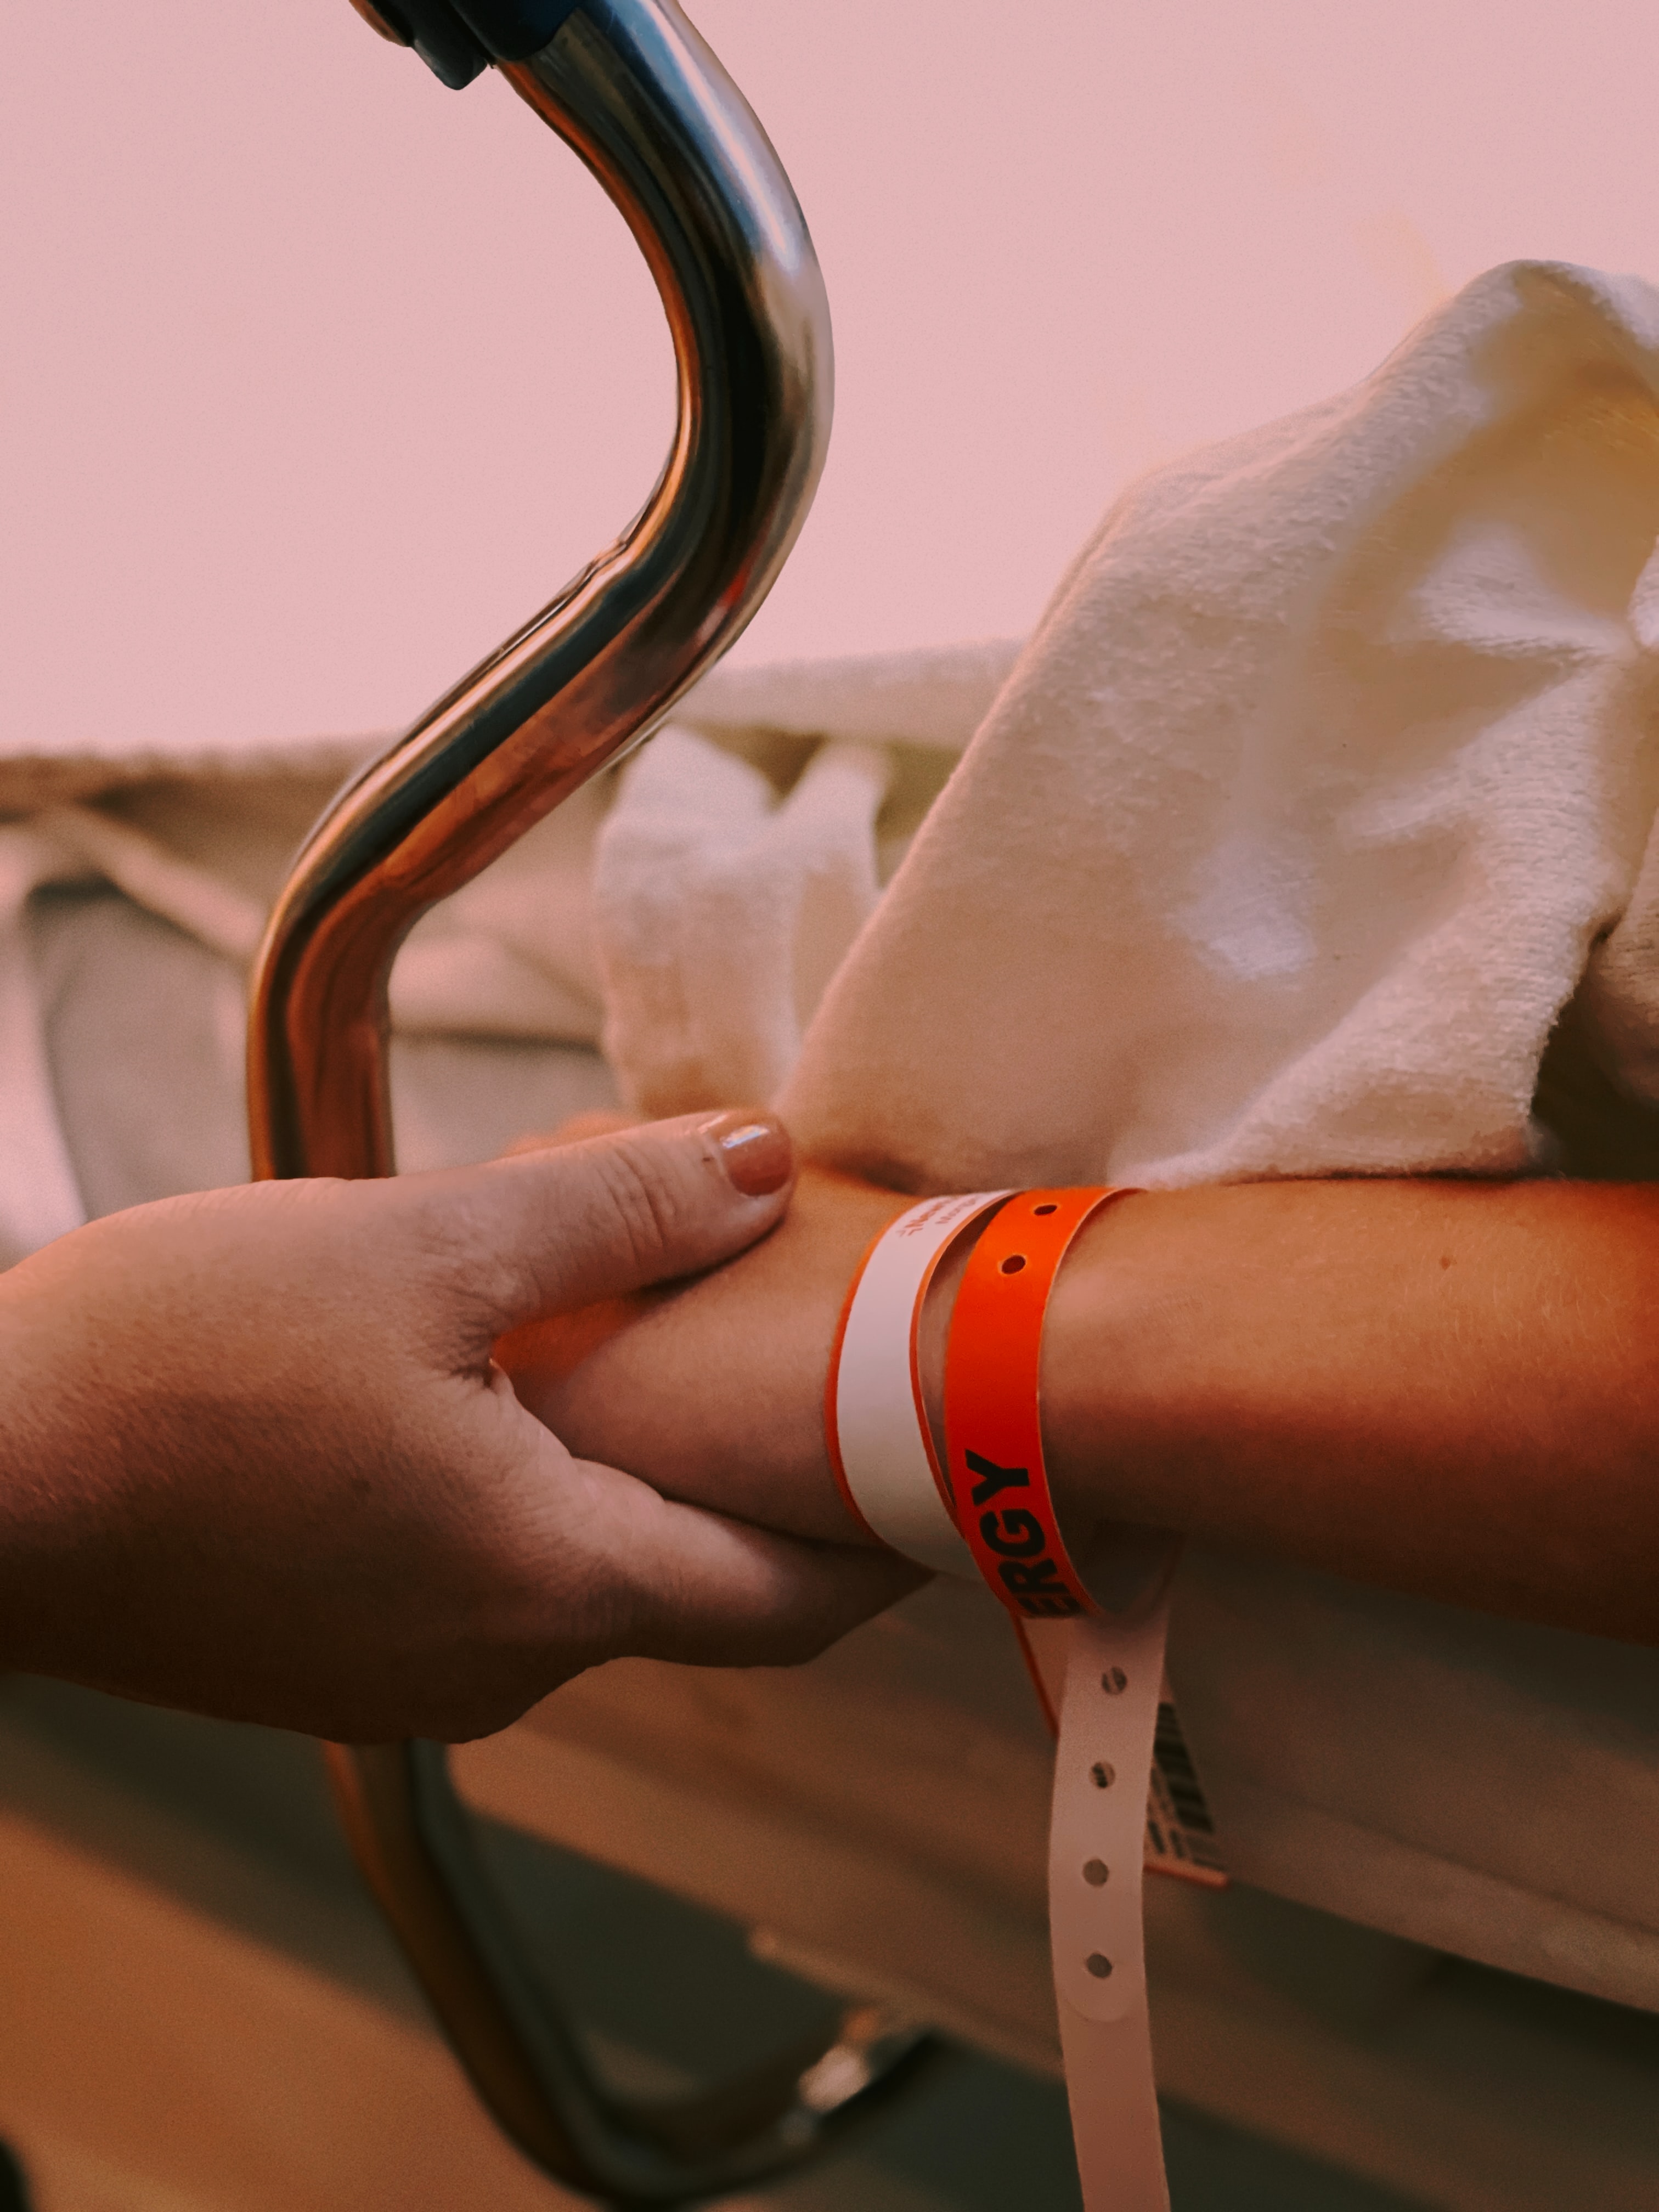 Photo of hand holding in hospital: Jon Tyson via Unsplash